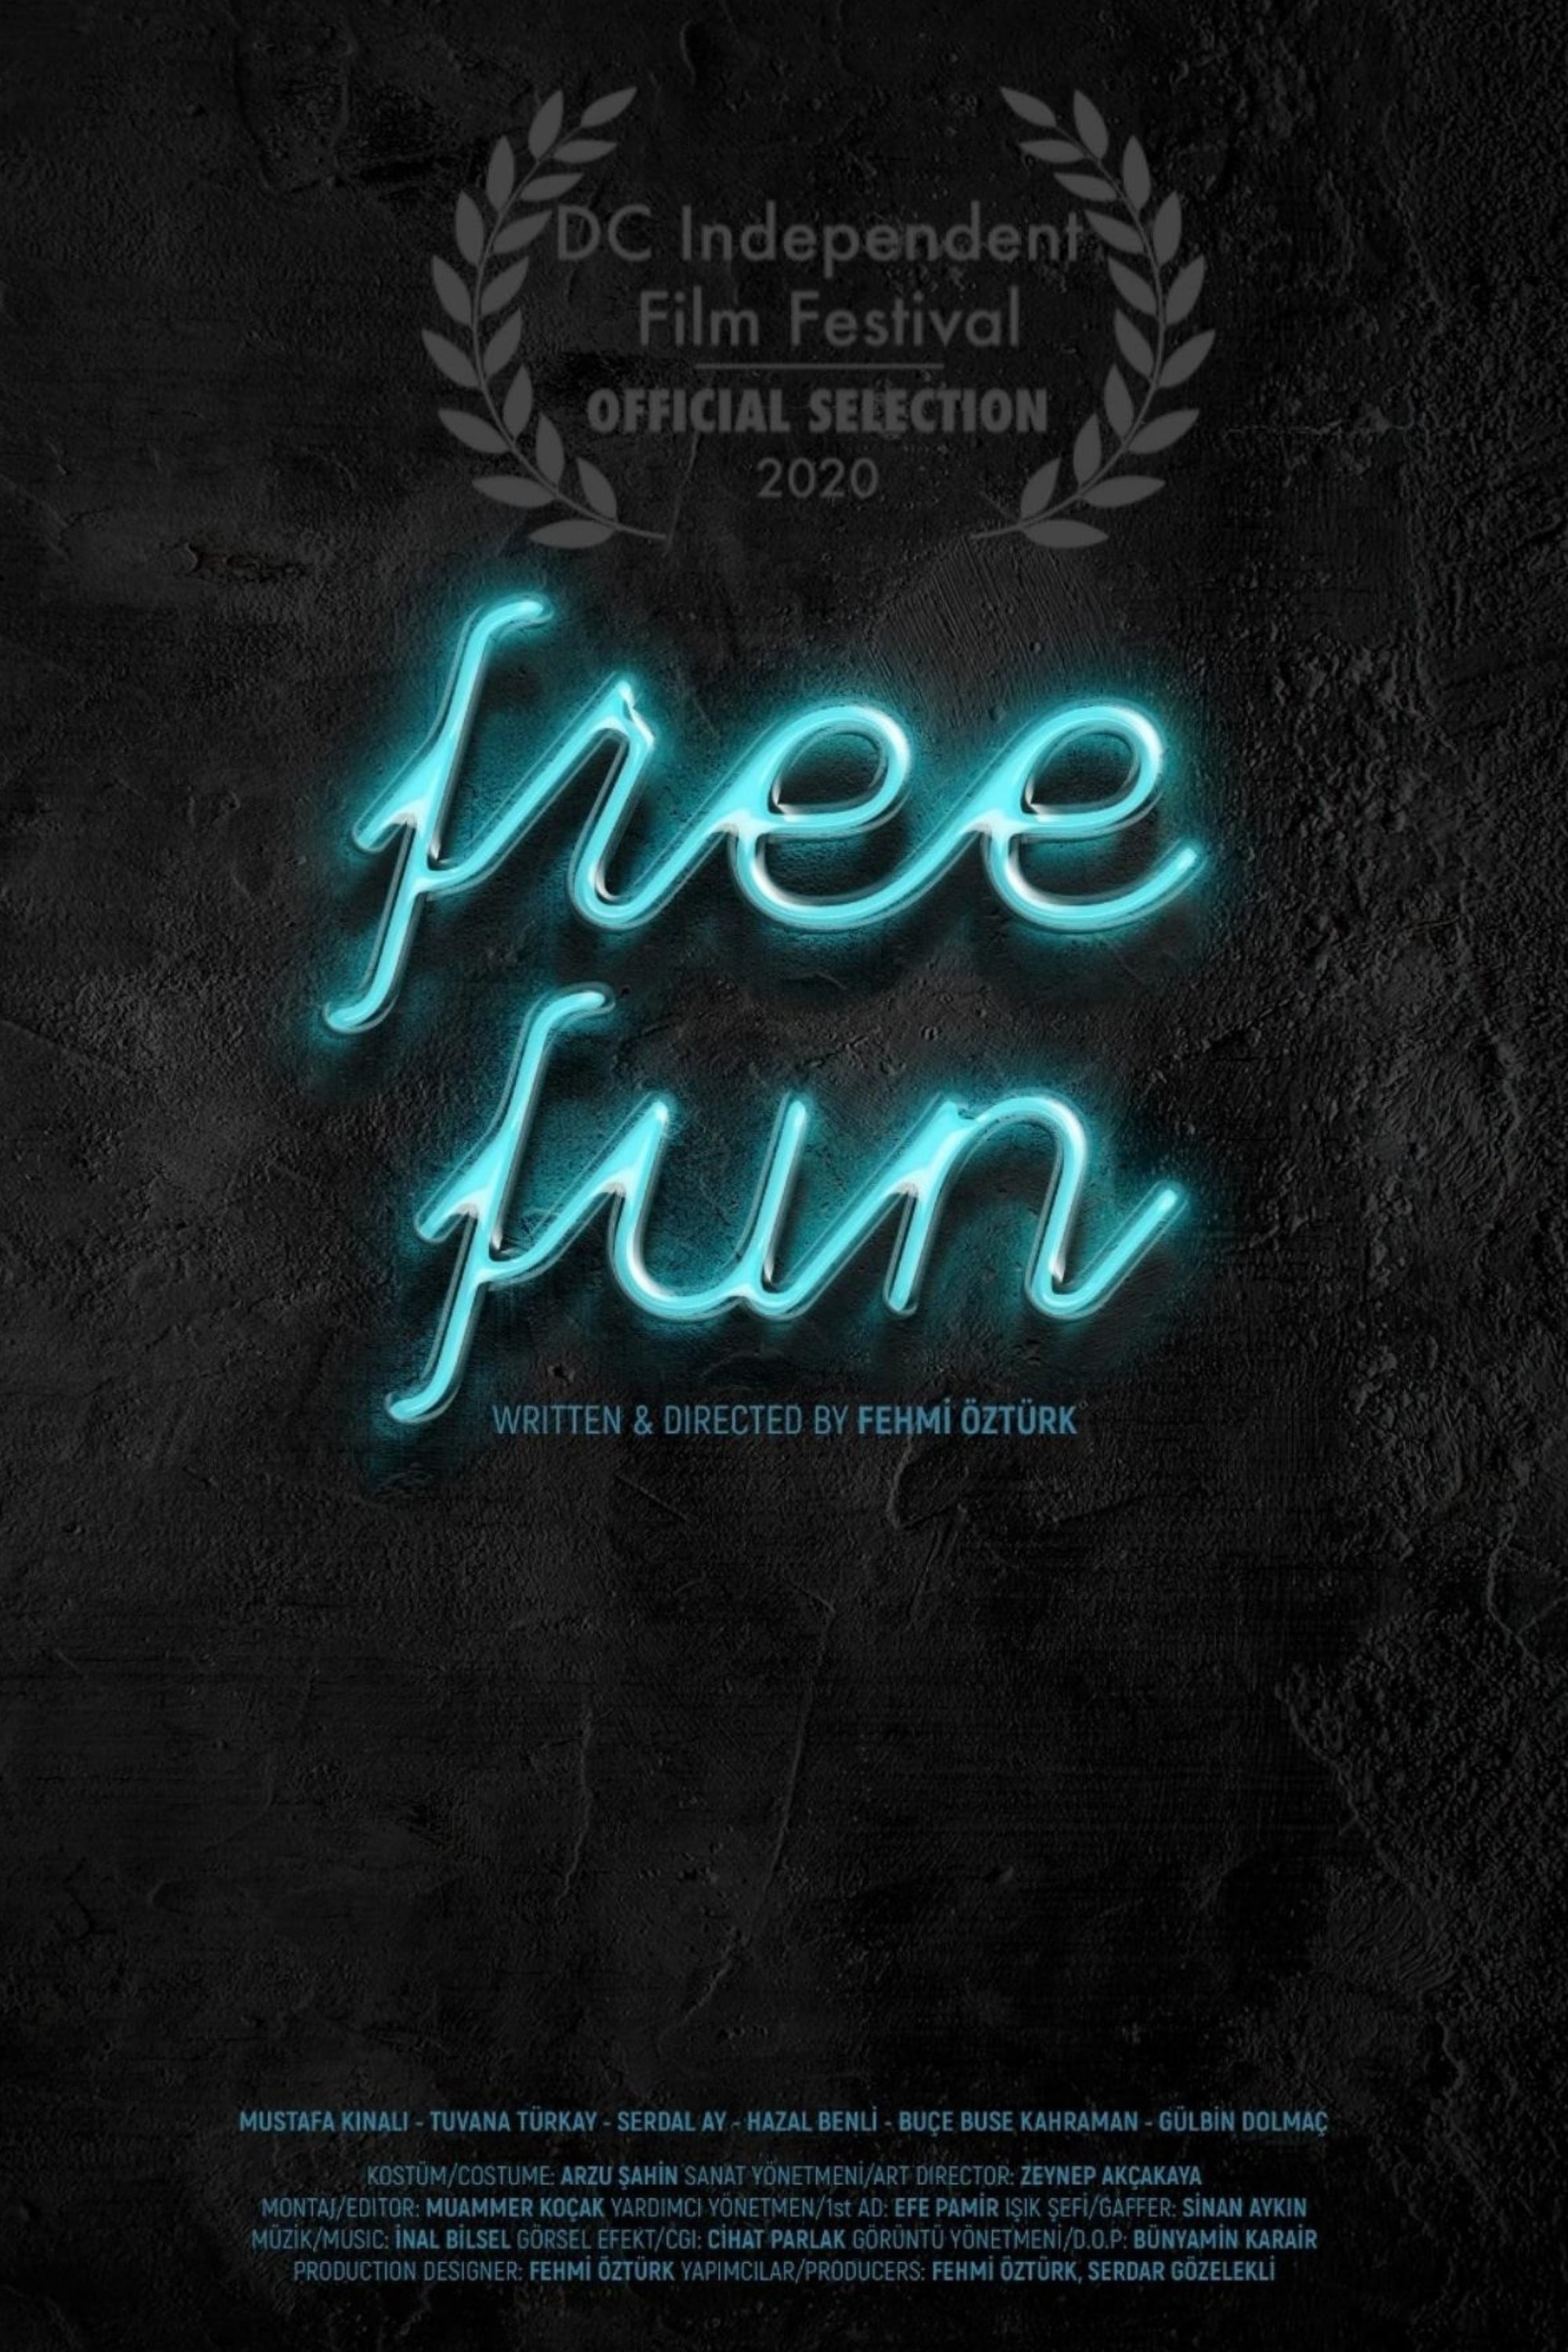 Free Fun